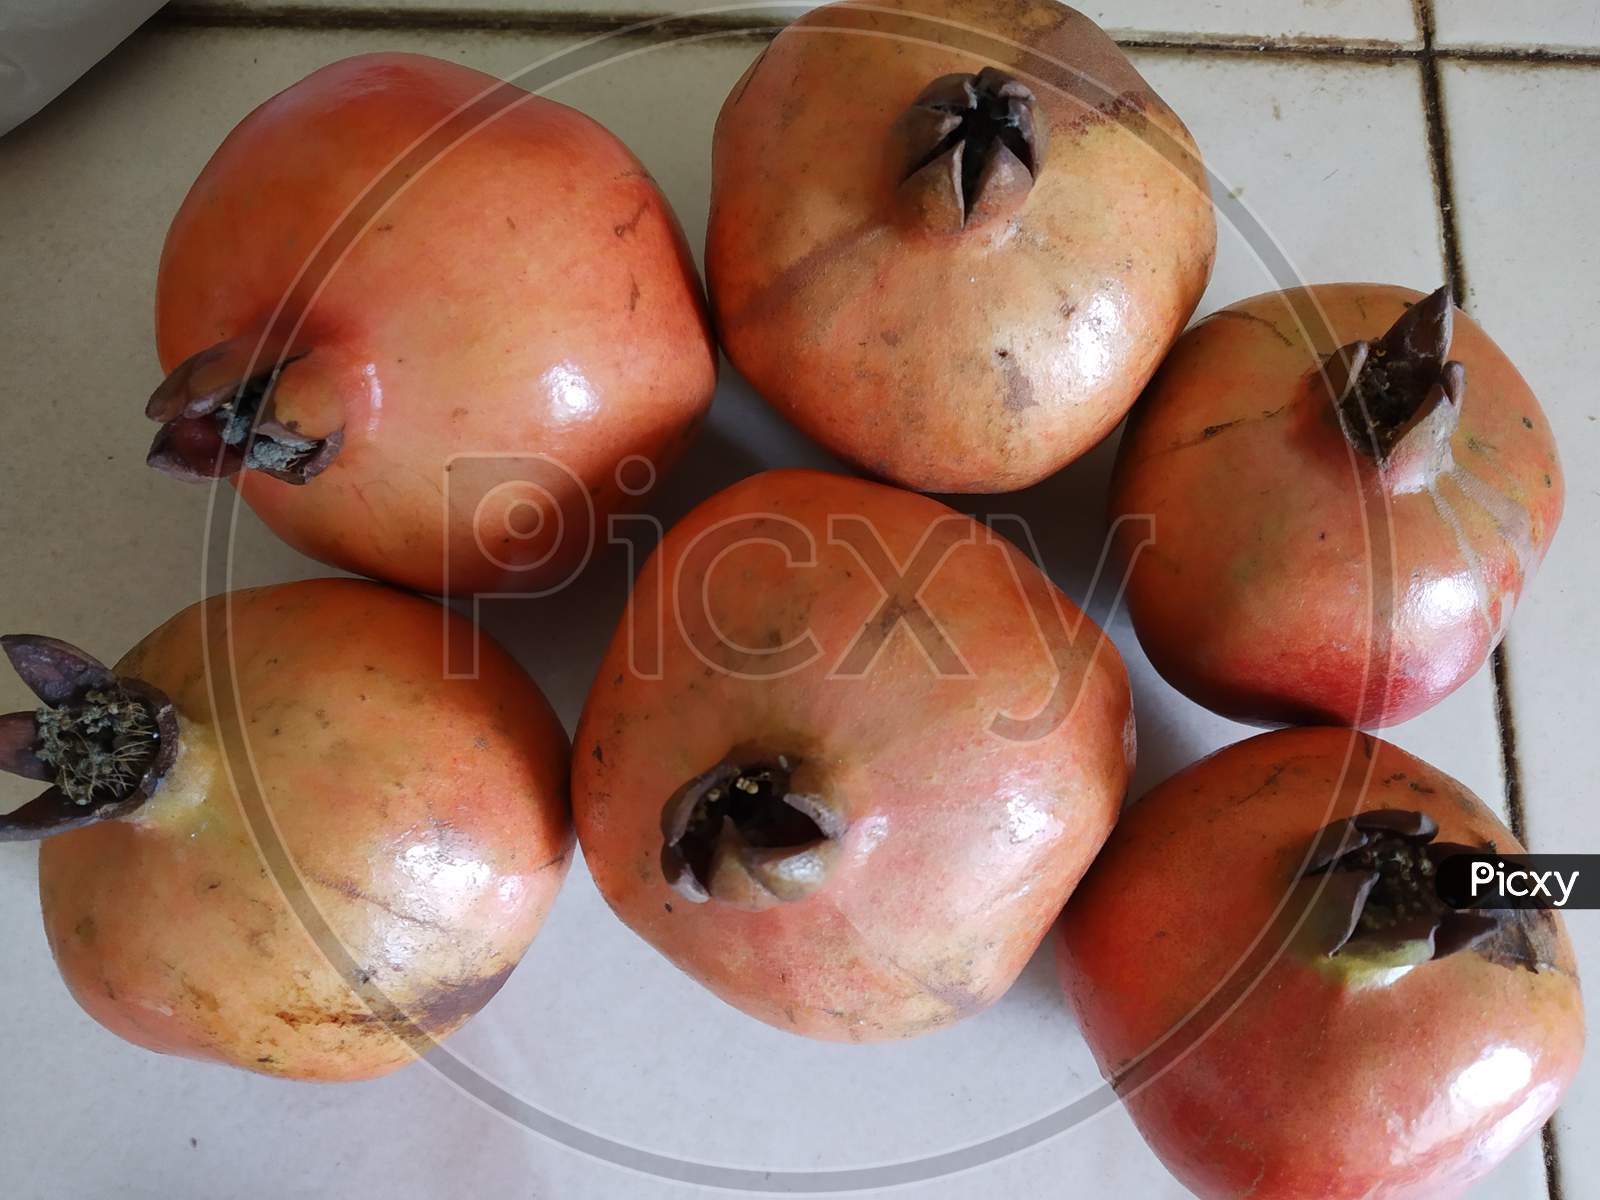 Pomegranate fruit  kept together